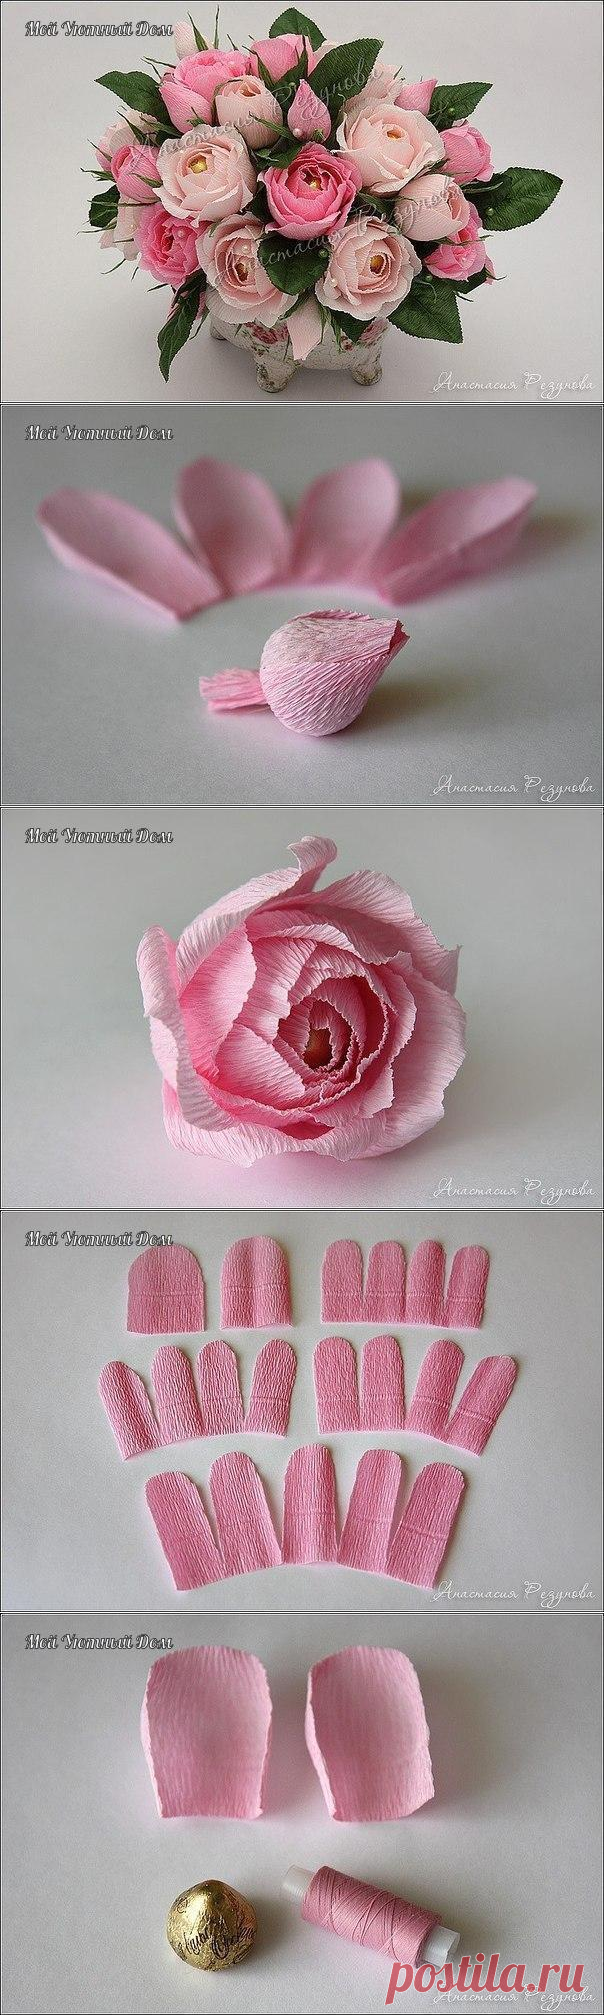 Букет из розовых роз из гофрированной бумаги с конфетами — Сделай сам, идеи для творчества - DIY Ideas